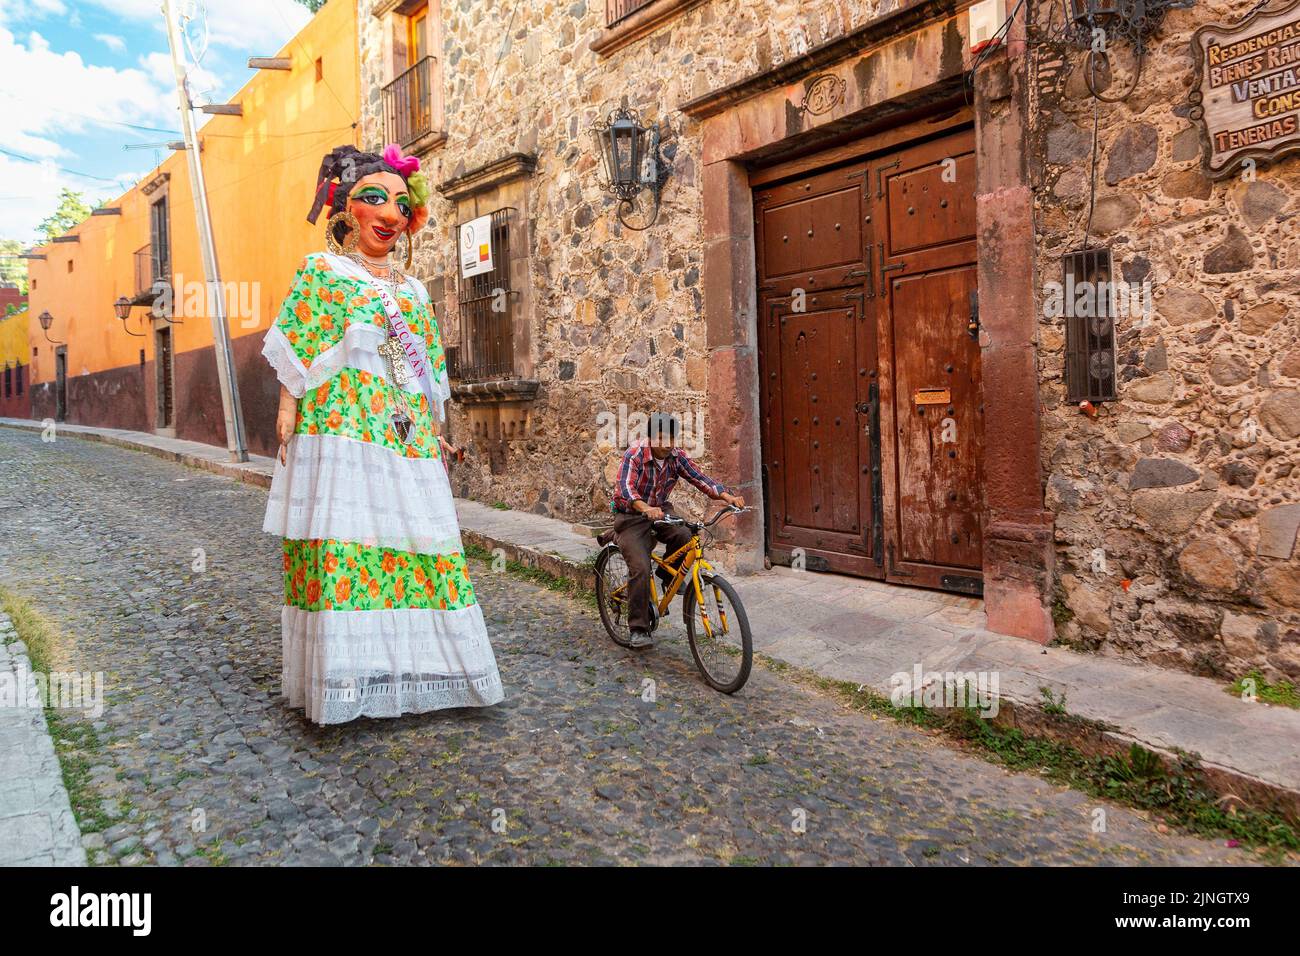 Un cycliste passe devant un mojiganga ou une marionnette géante en papier mâché lorsqu'il marche dans le centre historique de San Miguel de Allende, au Mexique. Banque D'Images